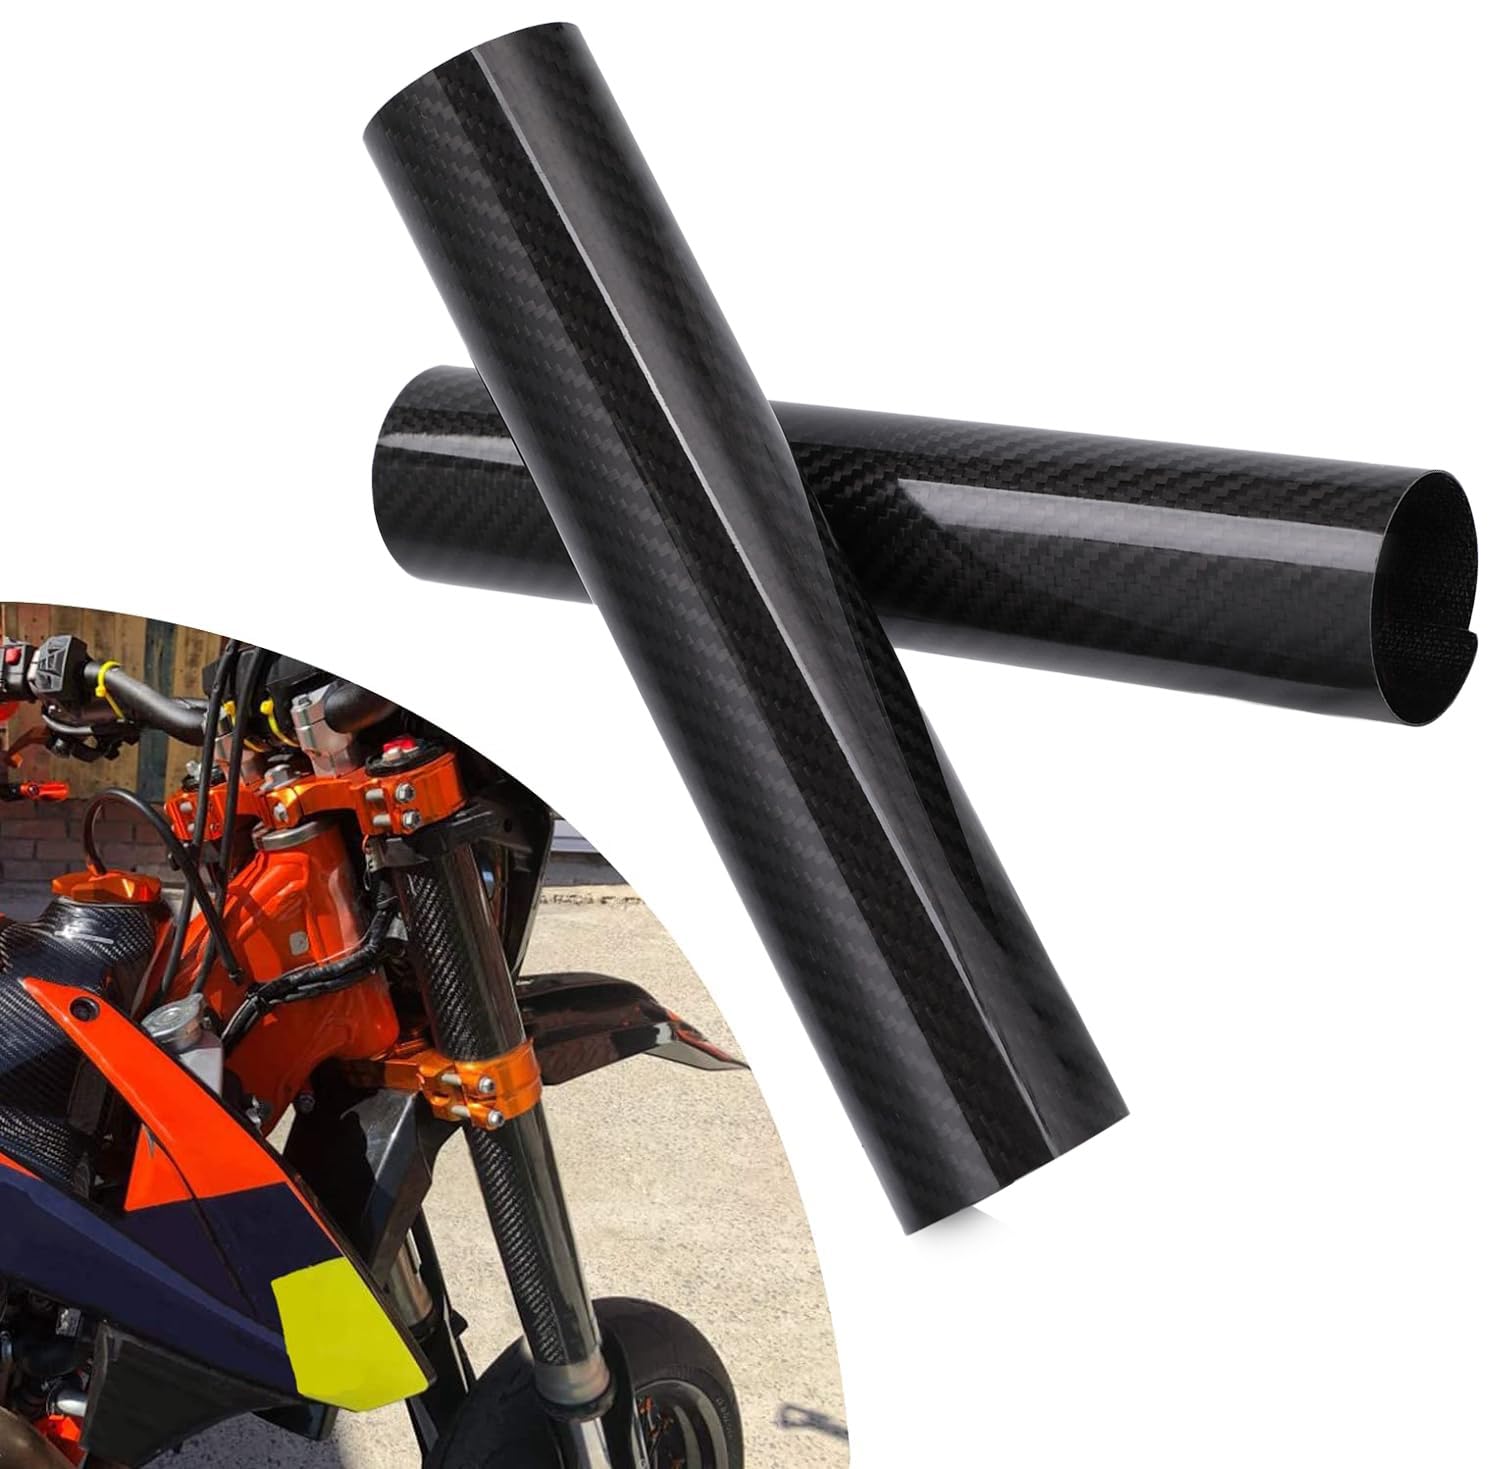 BIUGERCN 170MM Motorrad Gabel Protector Dirt Bike Kohlefaser Frontabdeckung Wrap Stoßdämpfer für die meisten Motorrad Motocross Dirt Pit Bike von BIUGERCN